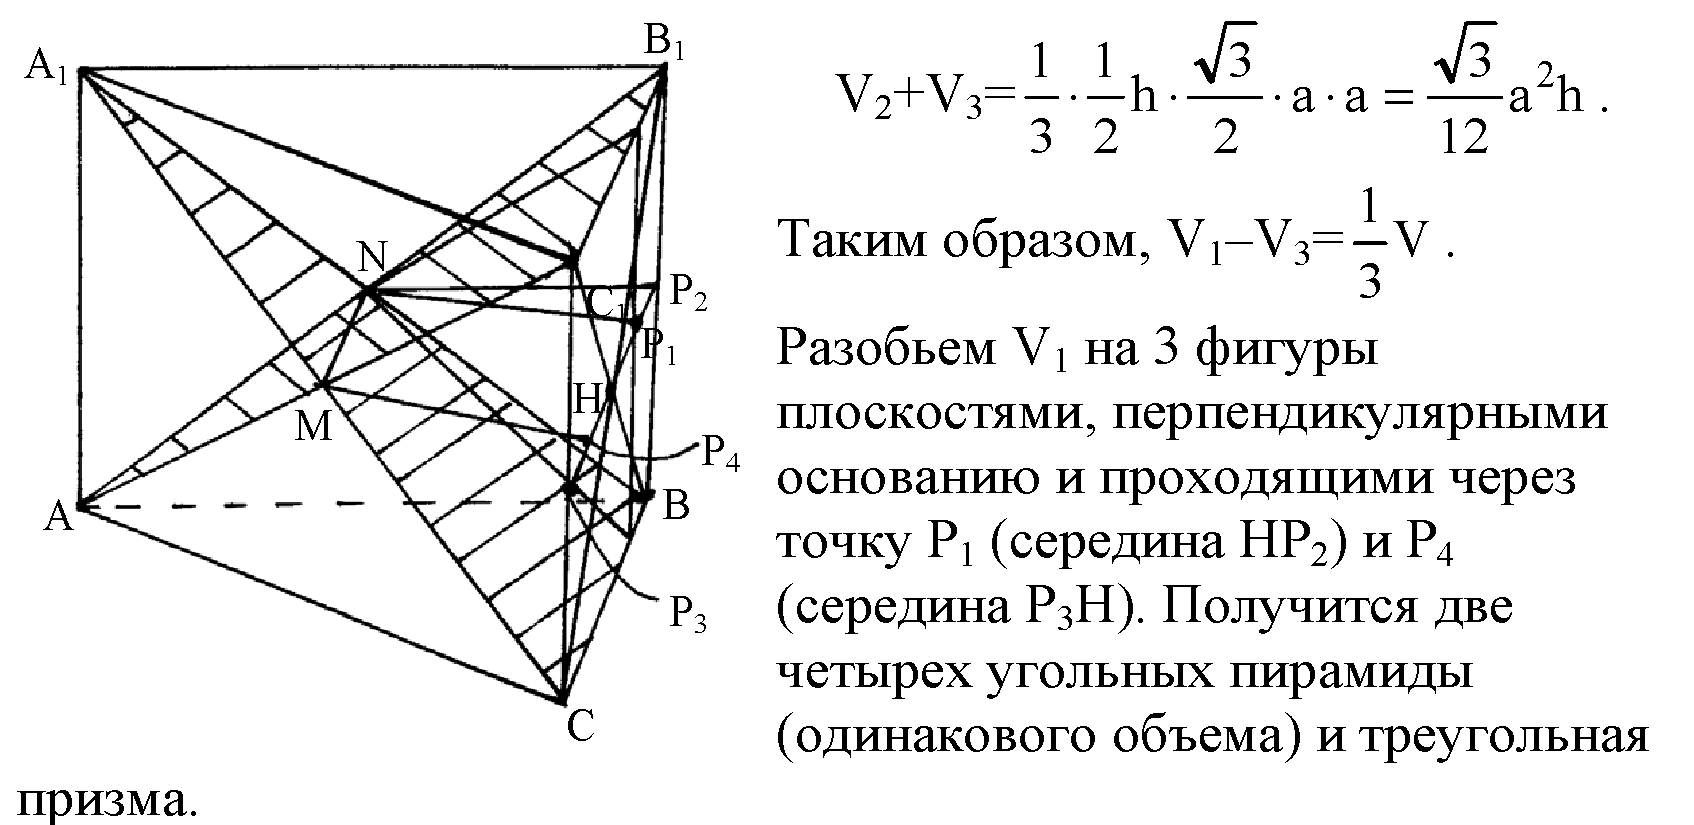 Треугольная Призма авса1в1с1. В правильной треугольной призме авса1в1с1. Правильная треугольная Призма разбивается плоскостью. Фигура разбивает плоскость.